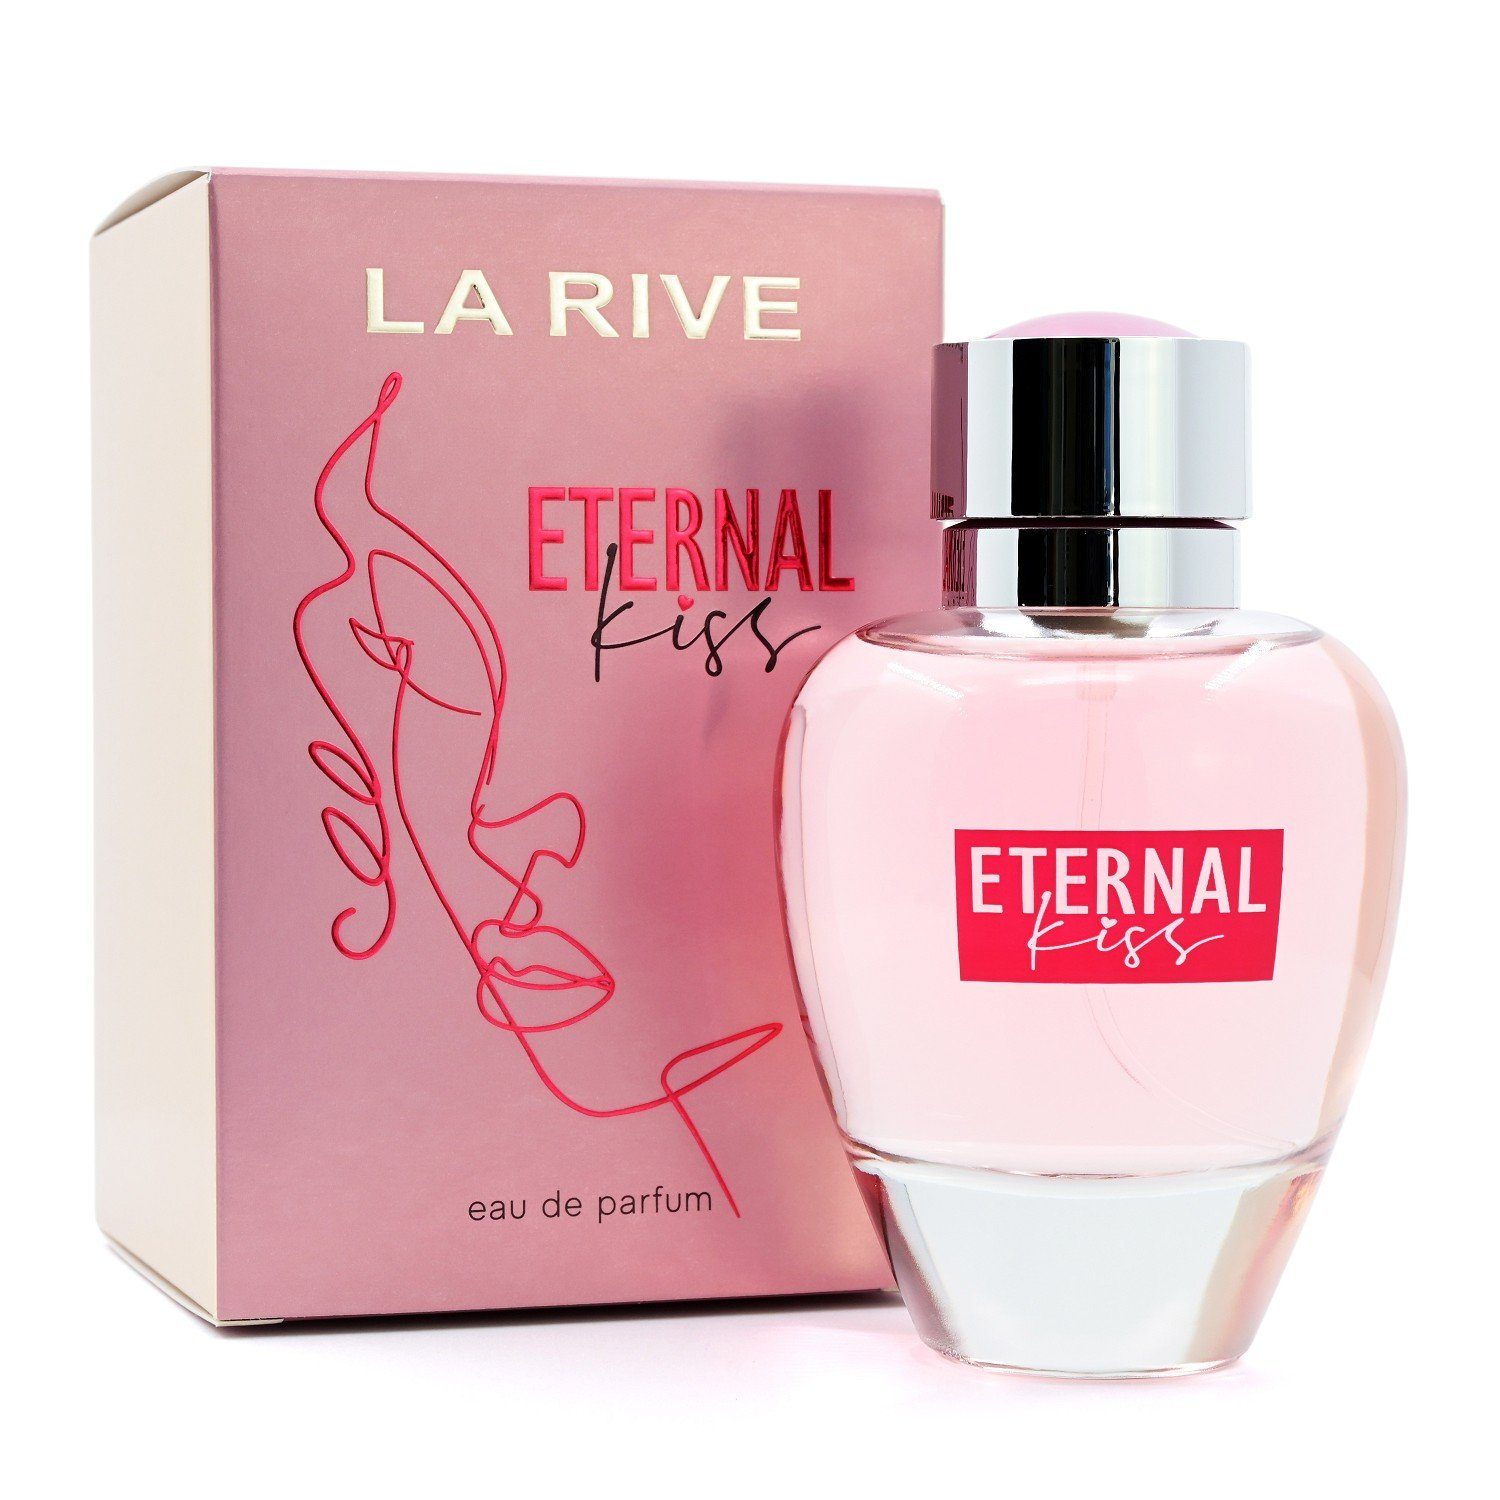 RIVE ml 90 Eau Parfum Parfum de Eau - de Eternal La Rive Kiss - LA